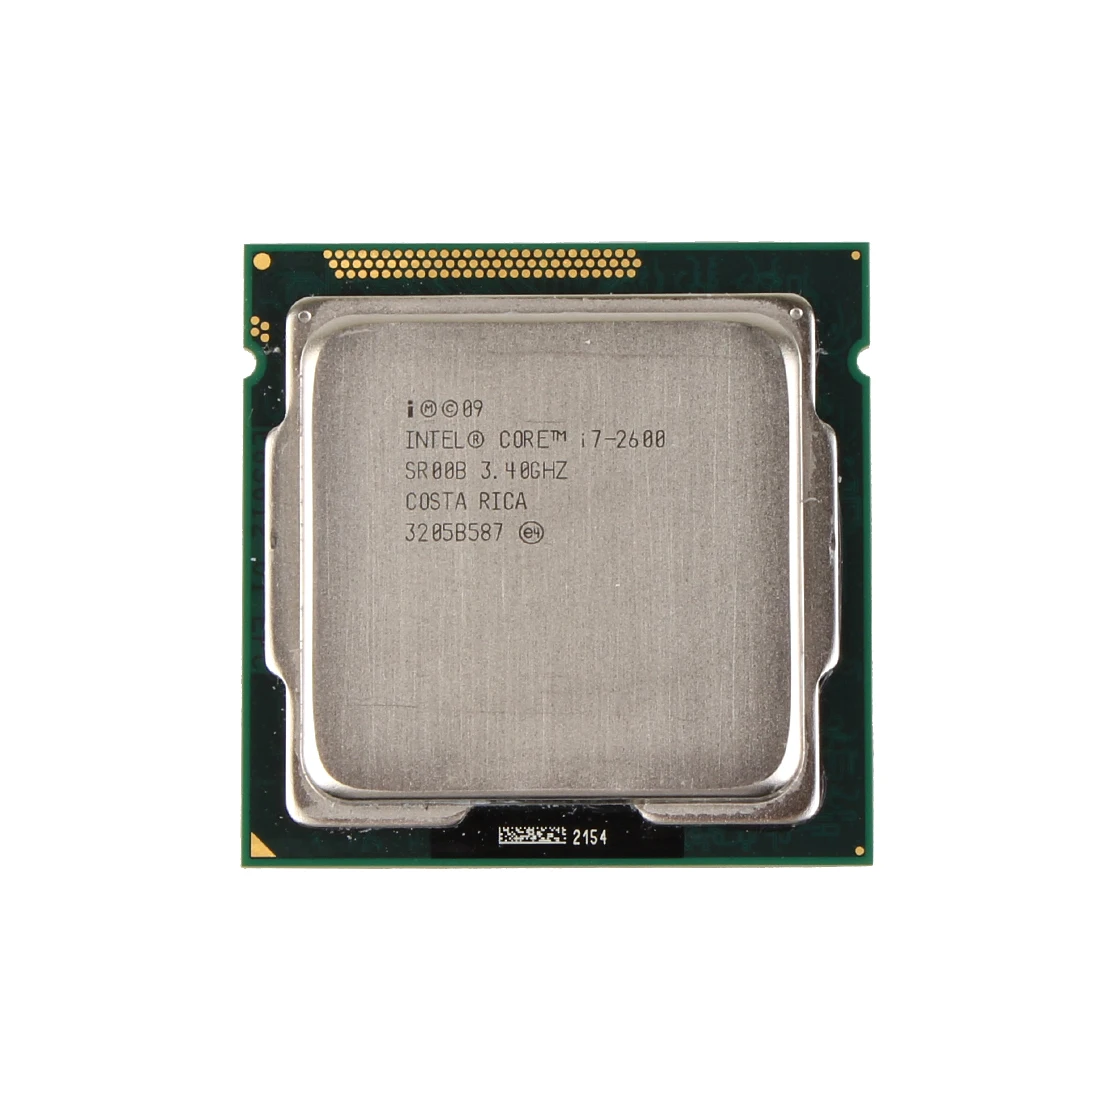 Интел i7 2600. Intel Core i7 2600k. Intel Core i7-2600 Sandy Bridge lga1155, 4 x 3400 МГЦ. Intel 430 Celeron sl9xn. Intel Core i7-2700k Sandy Bridge lga1155, 4 x 3500 МГЦ.